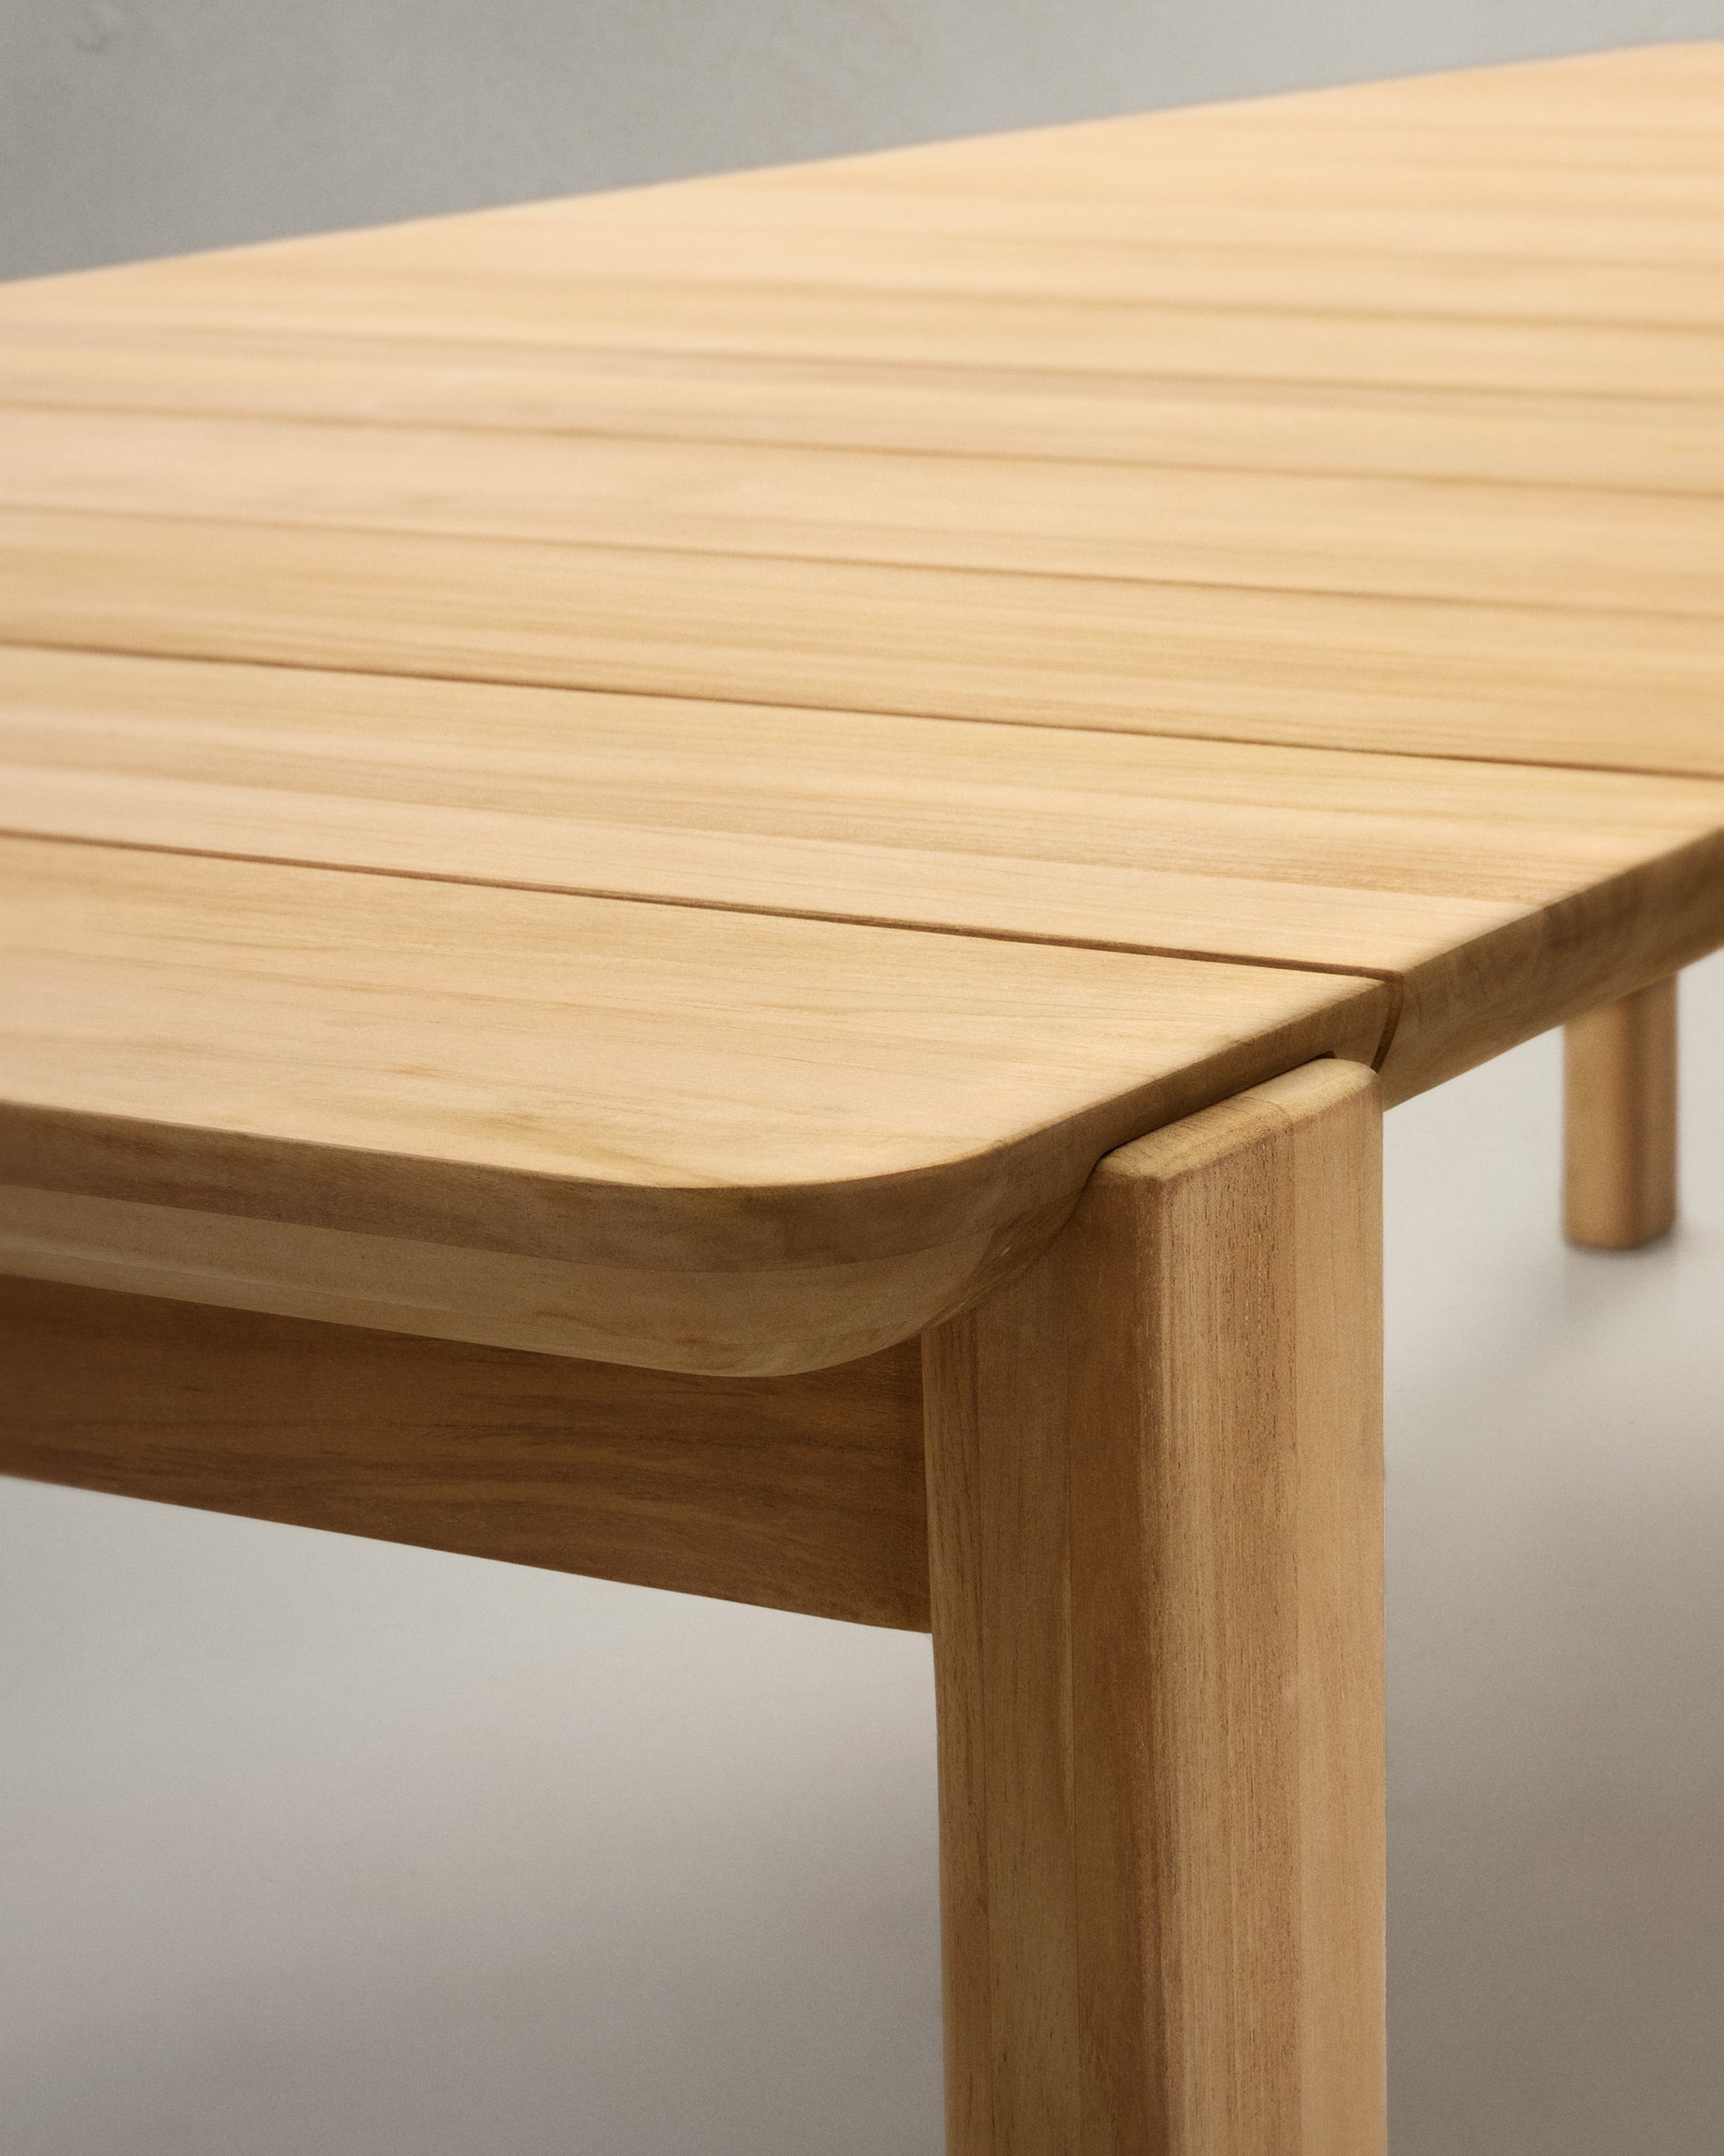 Icaro table in solid teak, 280 x 112 cm, 100% FSC